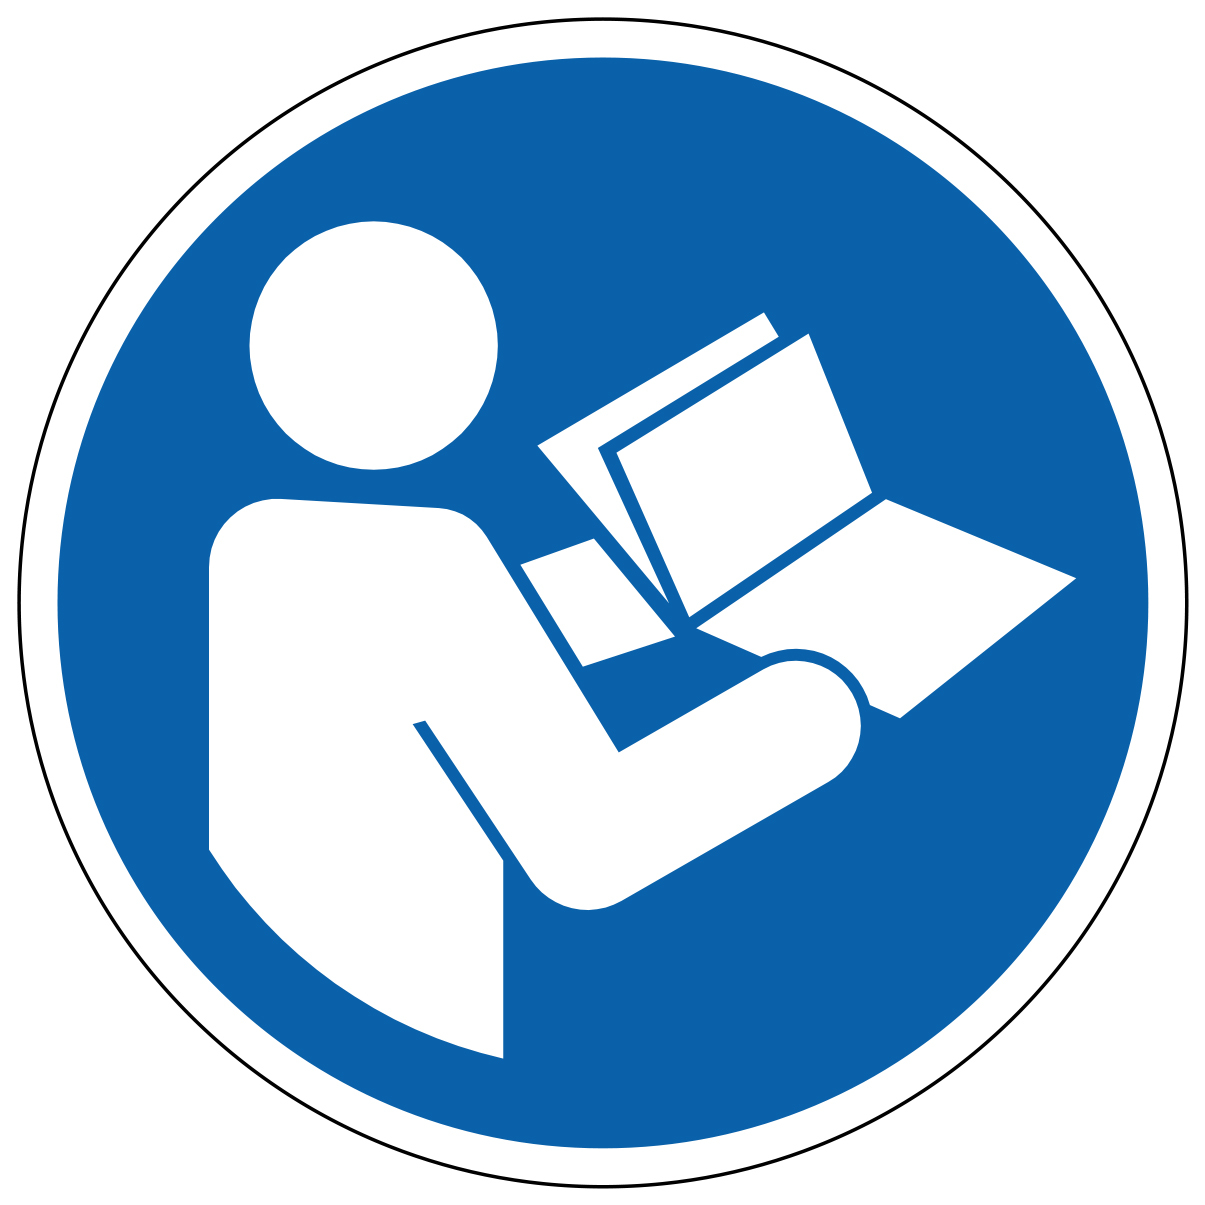 Consulter le manuel d'instruction - étiquettes et panneaux d'obligation et de consigne